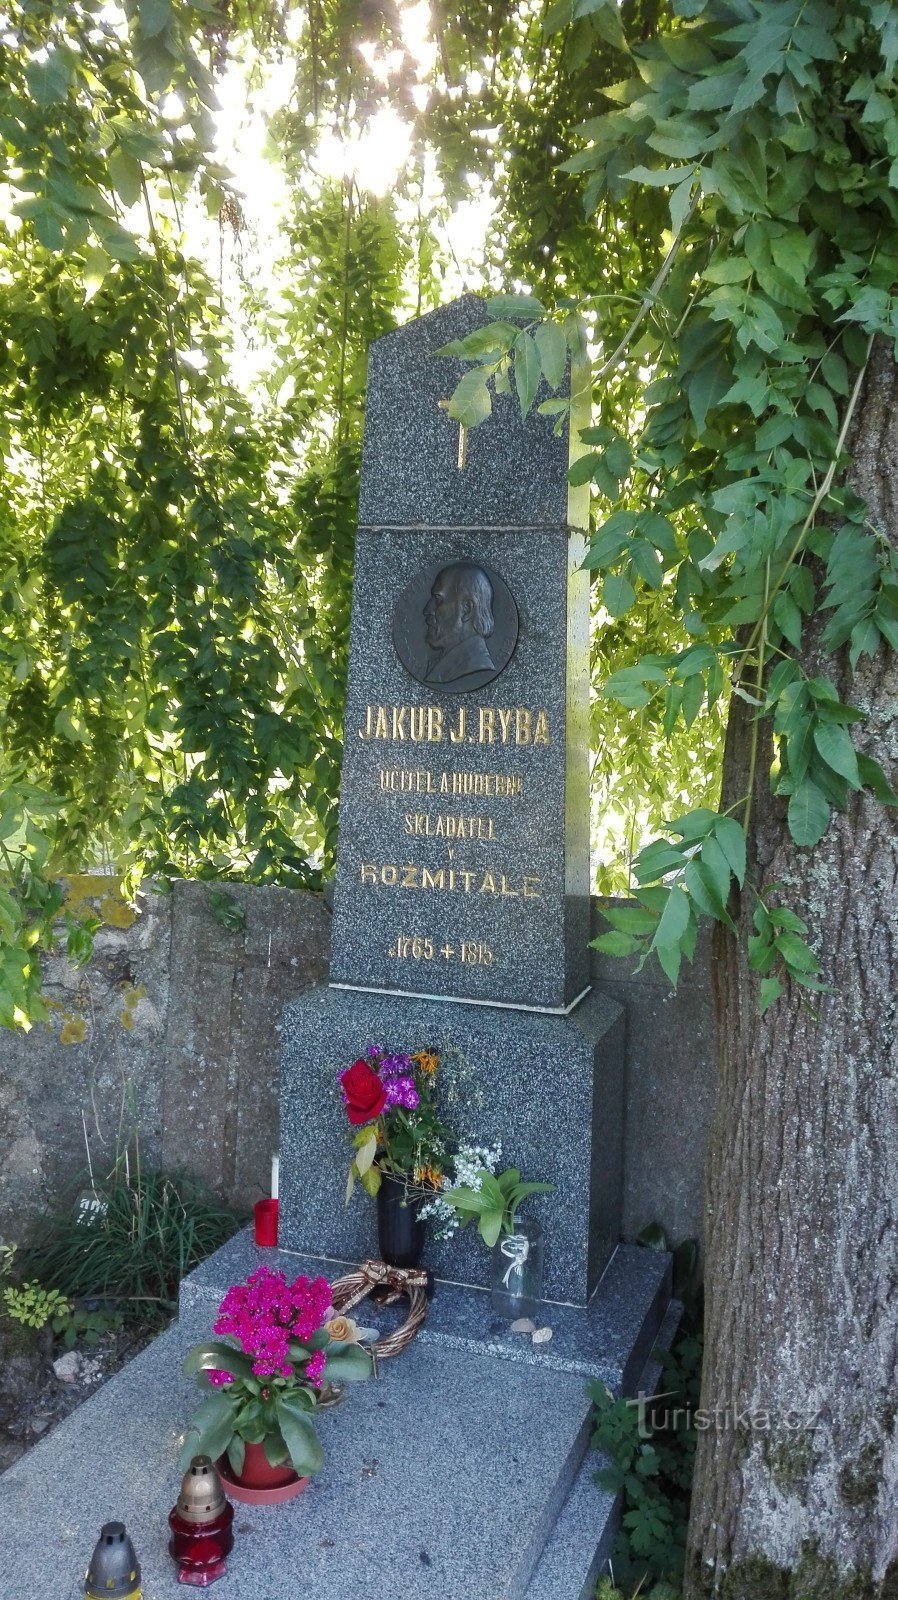 Monumento a JJRyba em Staré Rožmitál.